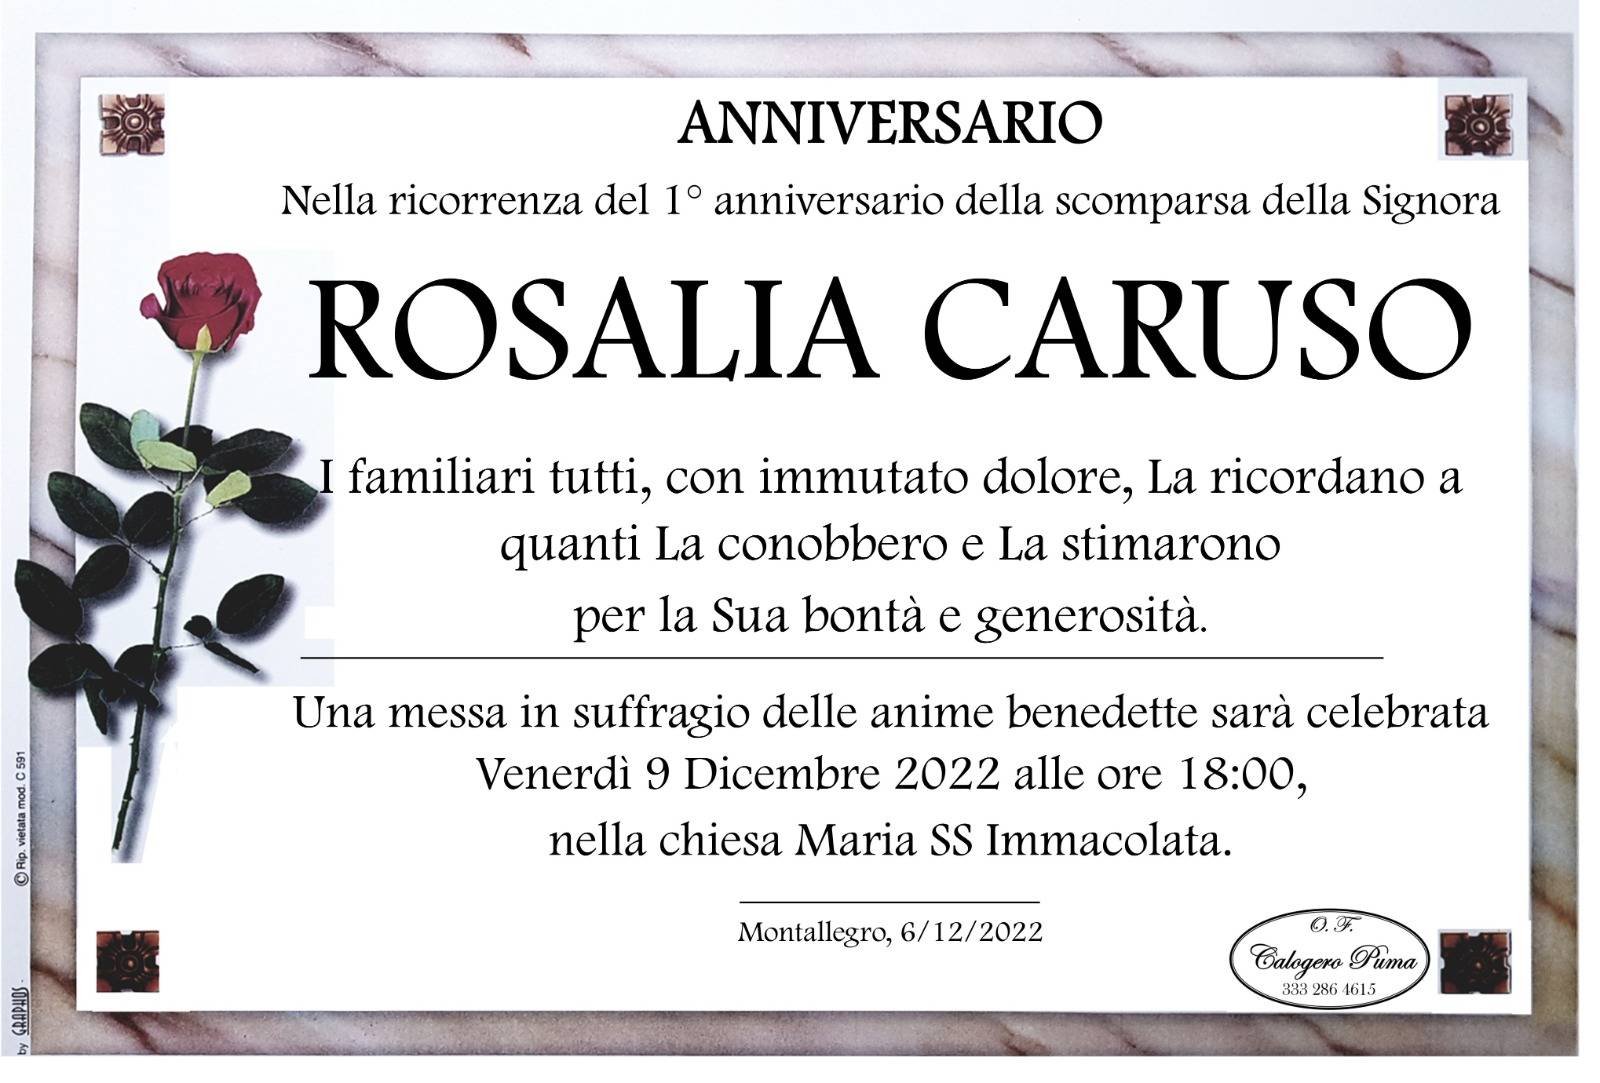 Rosalia Caruso